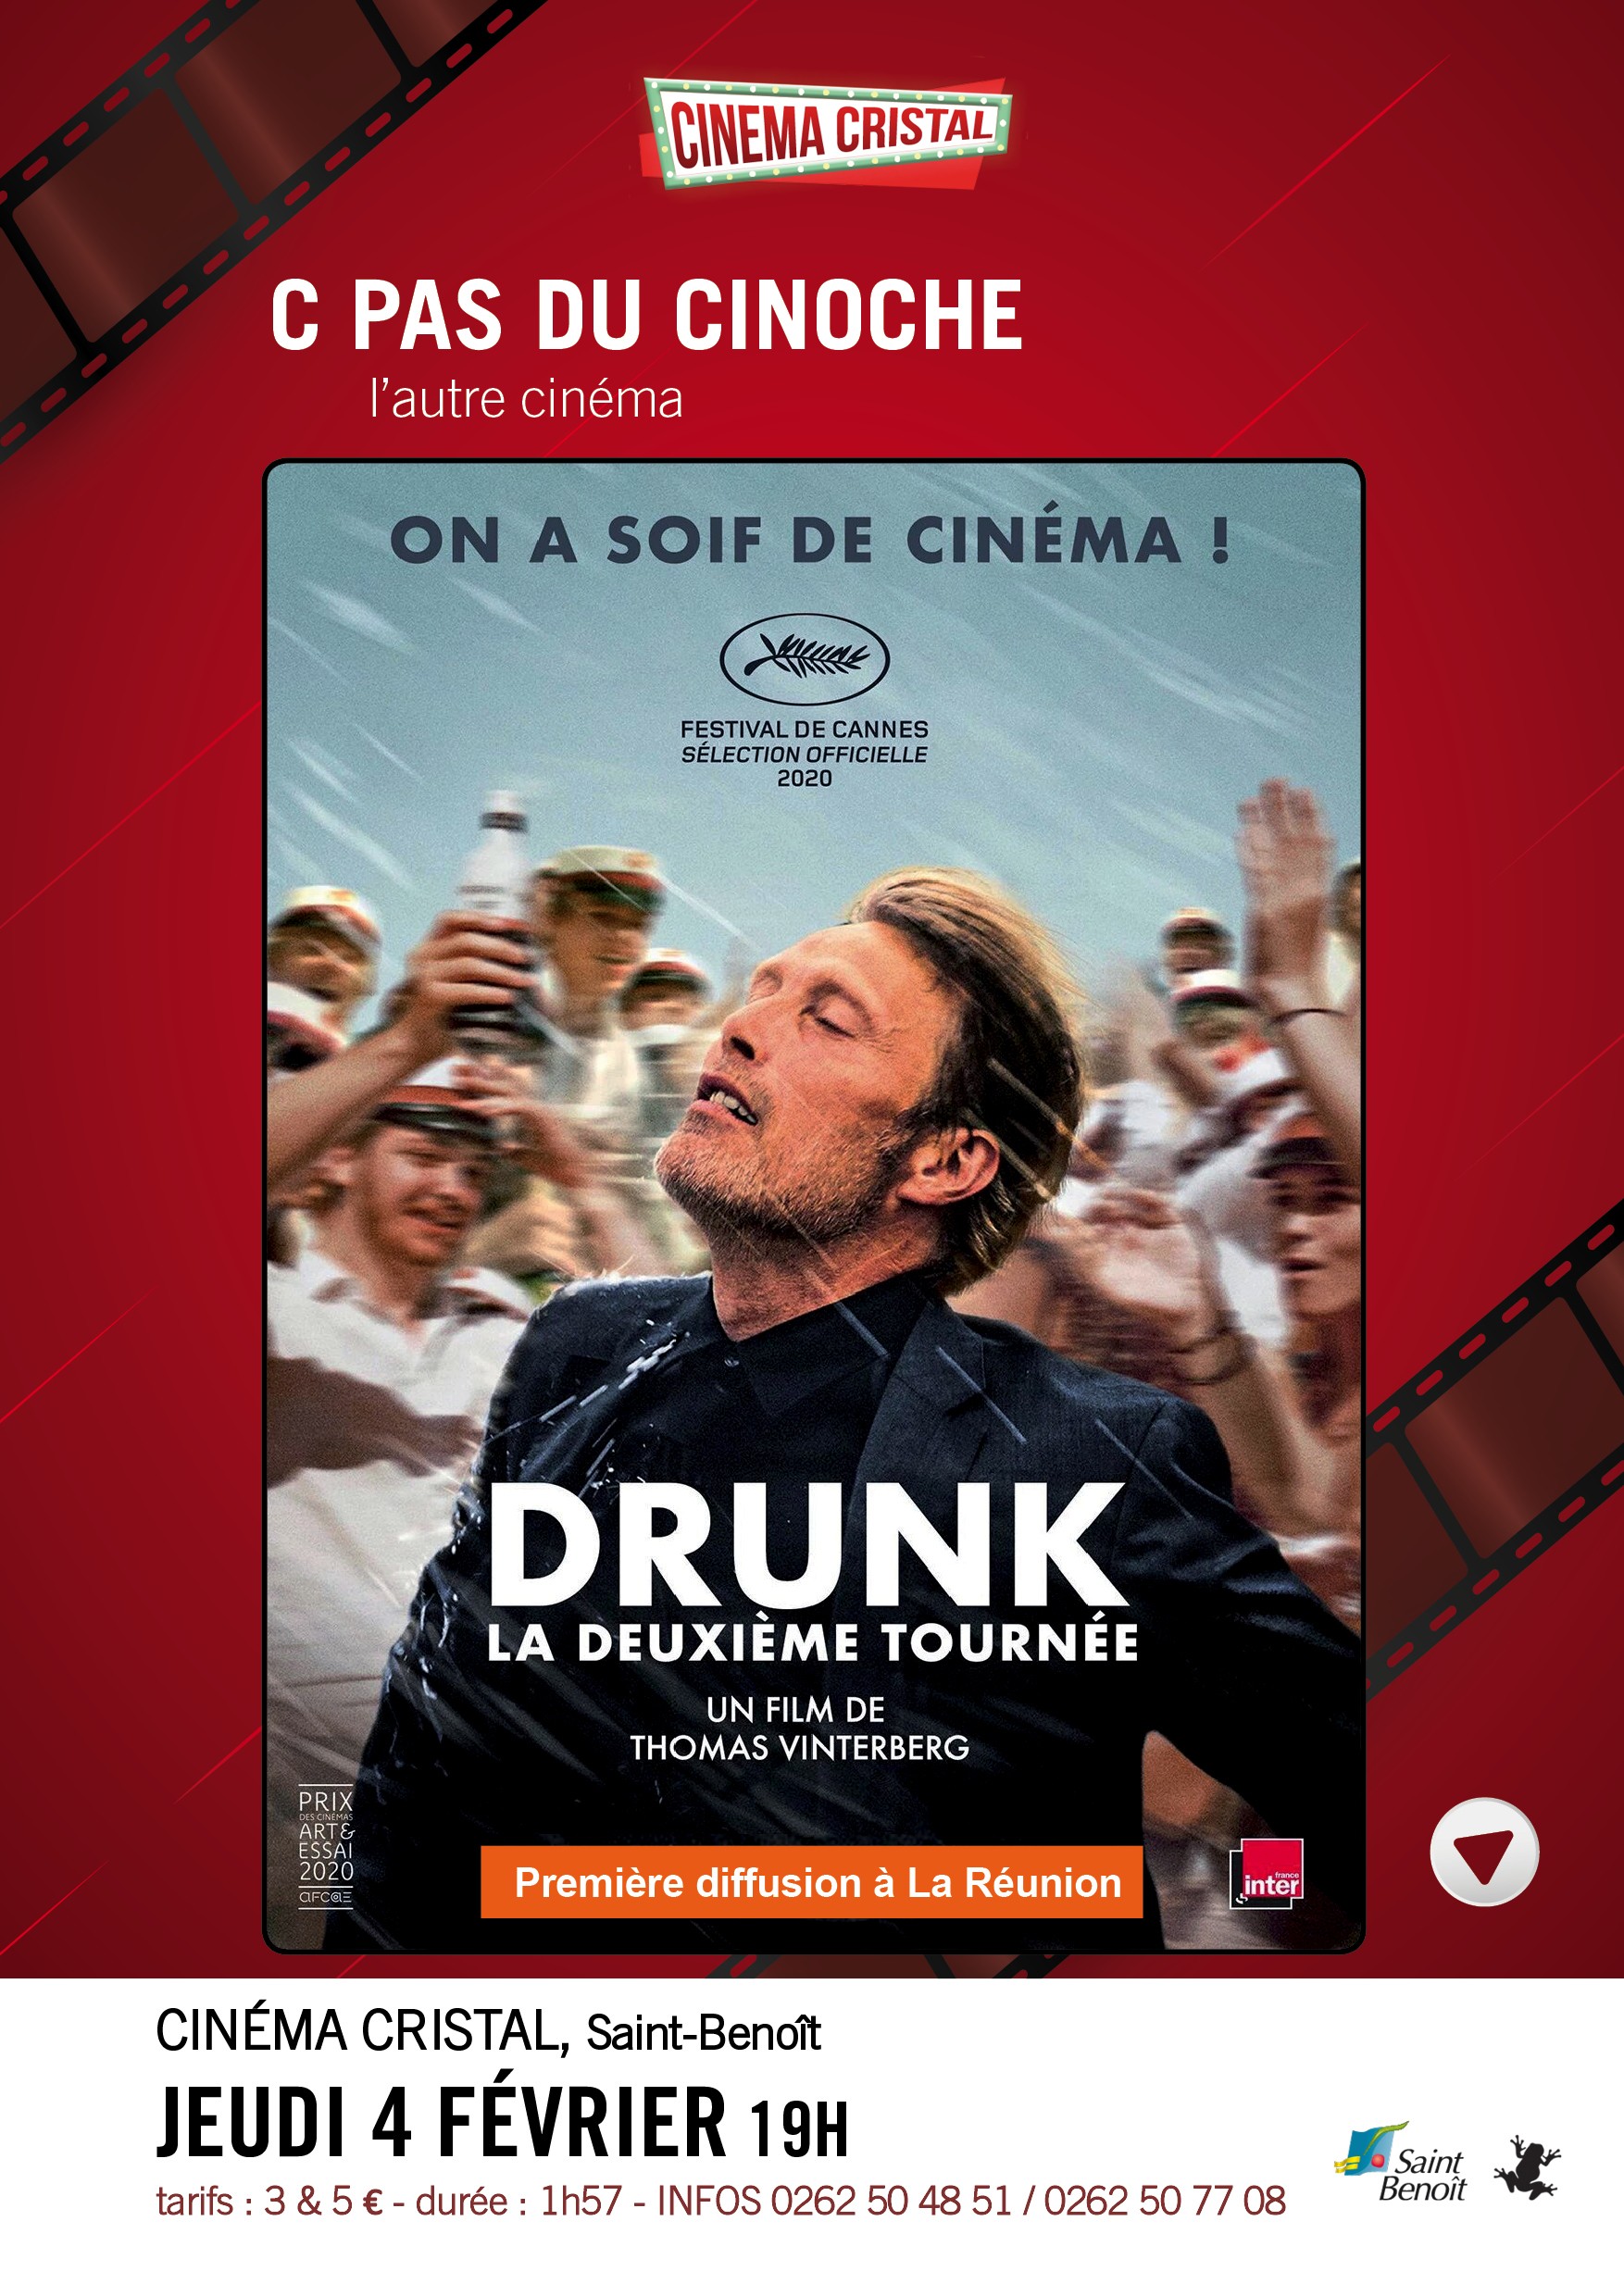 DRUNK, film de Thomas Vinterberg